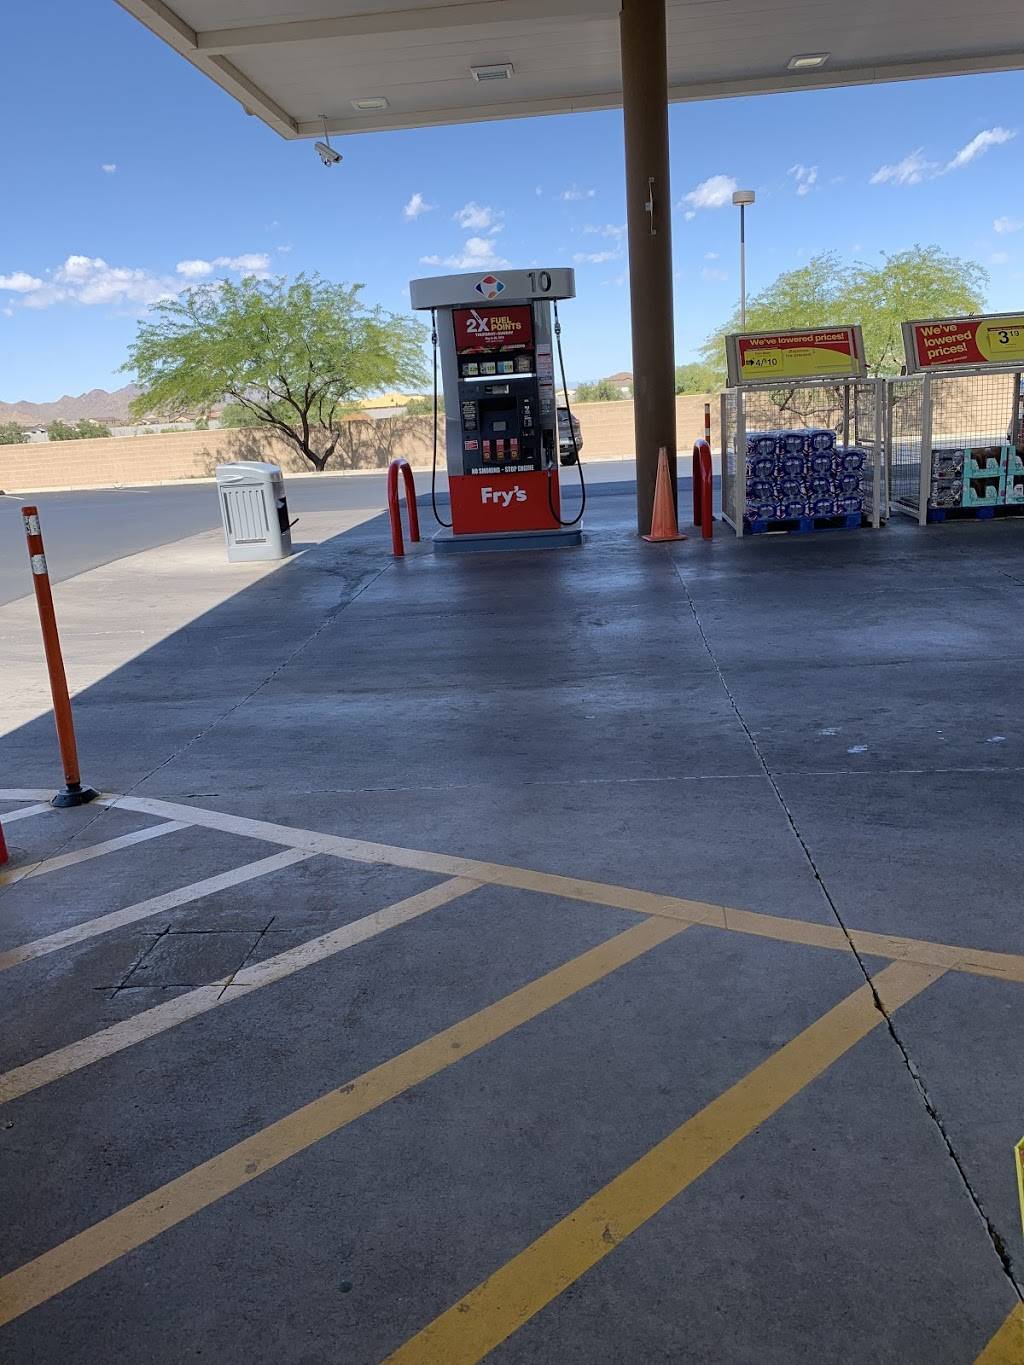 Frys Fuel Center | Photo 6 of 8 | Address: 205 W Combs Rd, Queen Creek, AZ 85140, USA | Phone: (480) 474-6612